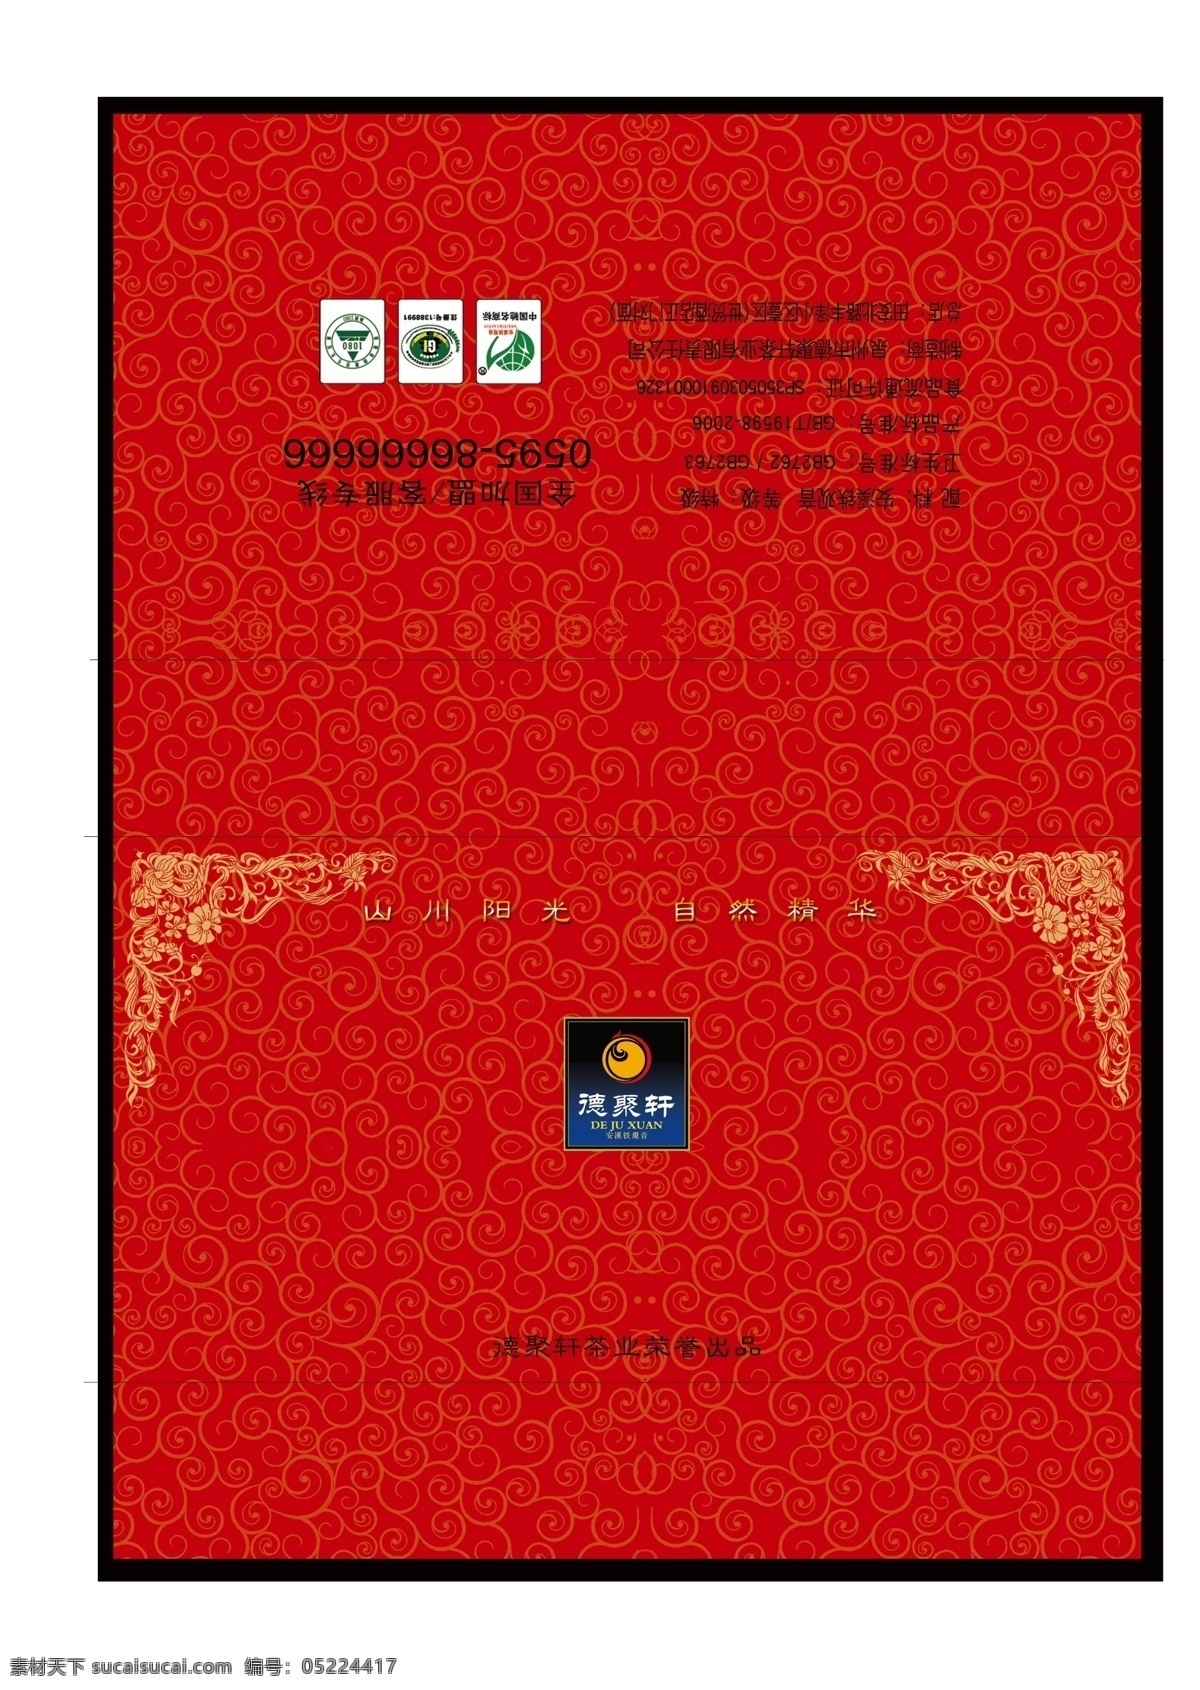 茶叶 盒 包装设计 茶叶盒 深红色 包装 效果图 广告设计模板 源文件